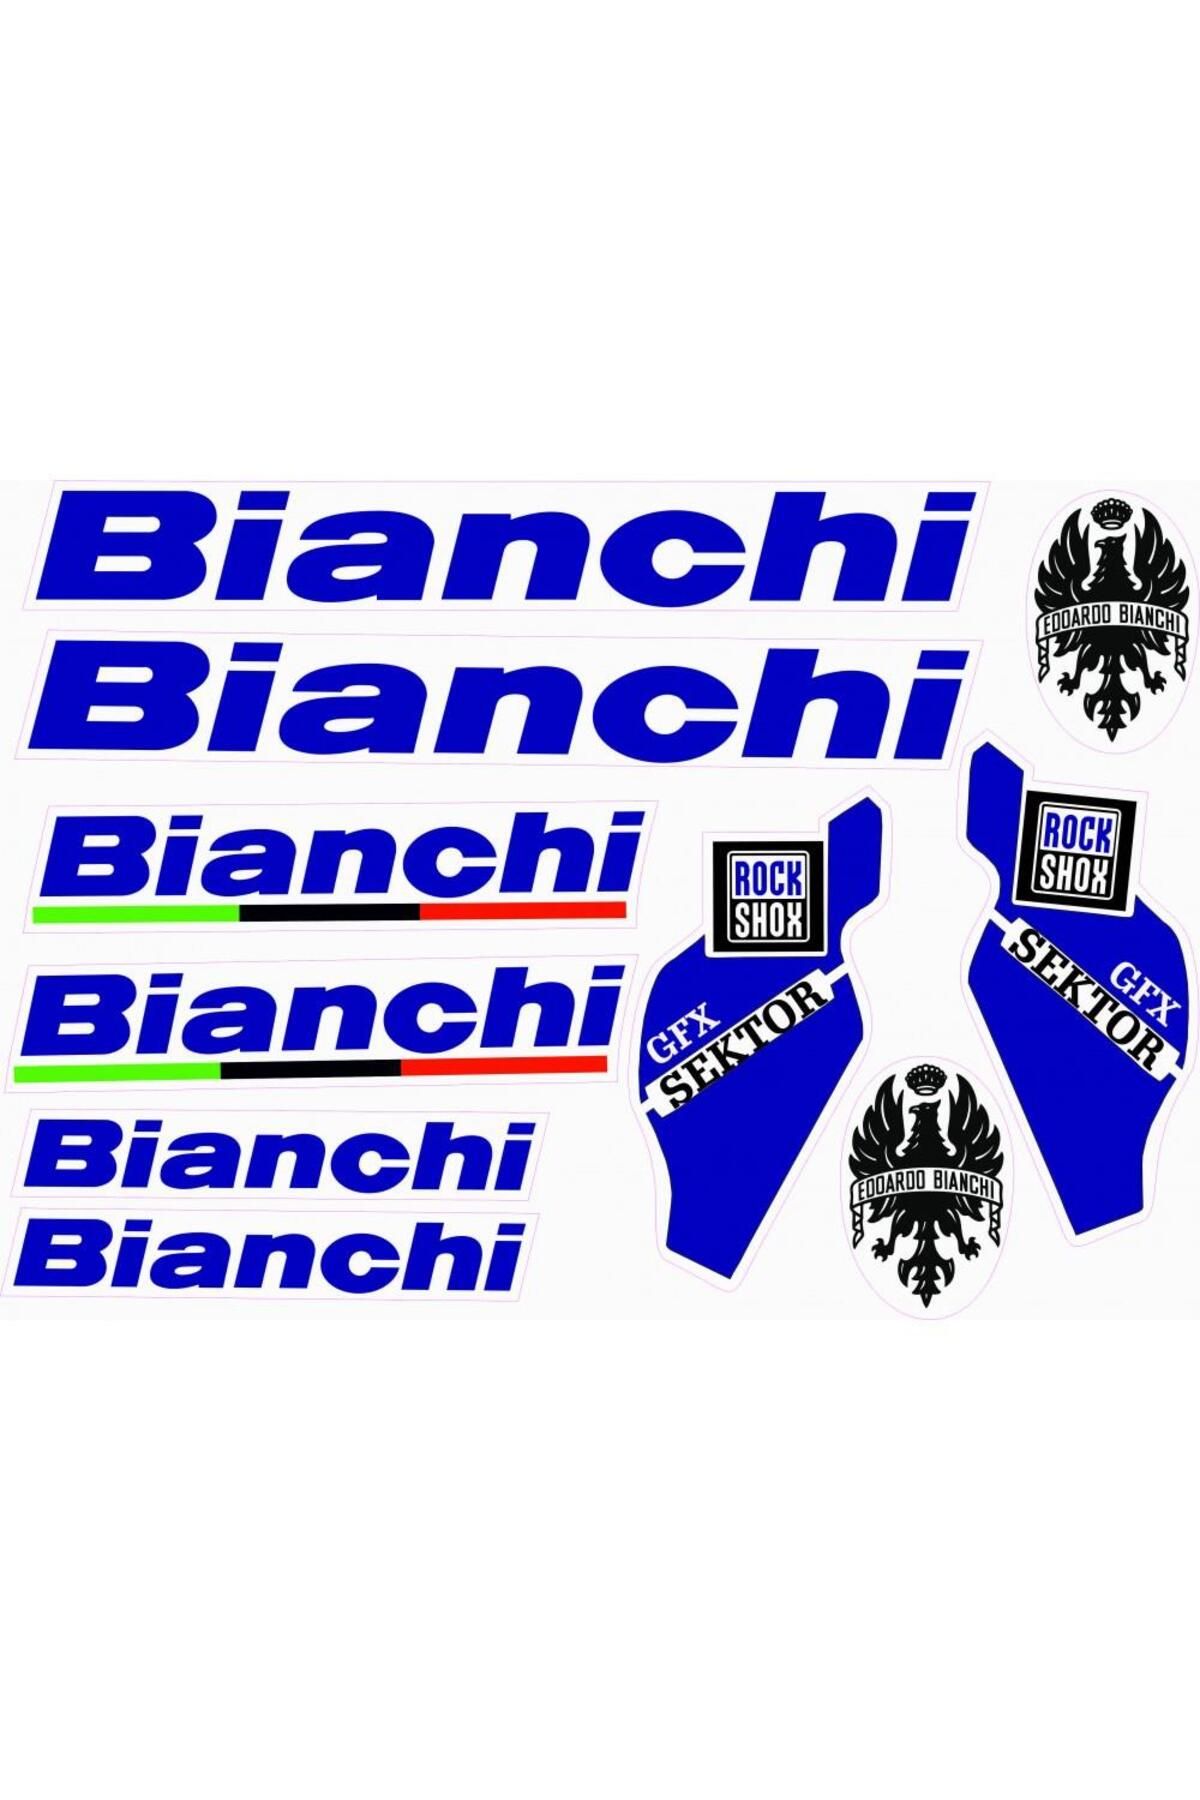 Monero Bianchi Bisiklet Sticker Etiket Seti Mavi A4